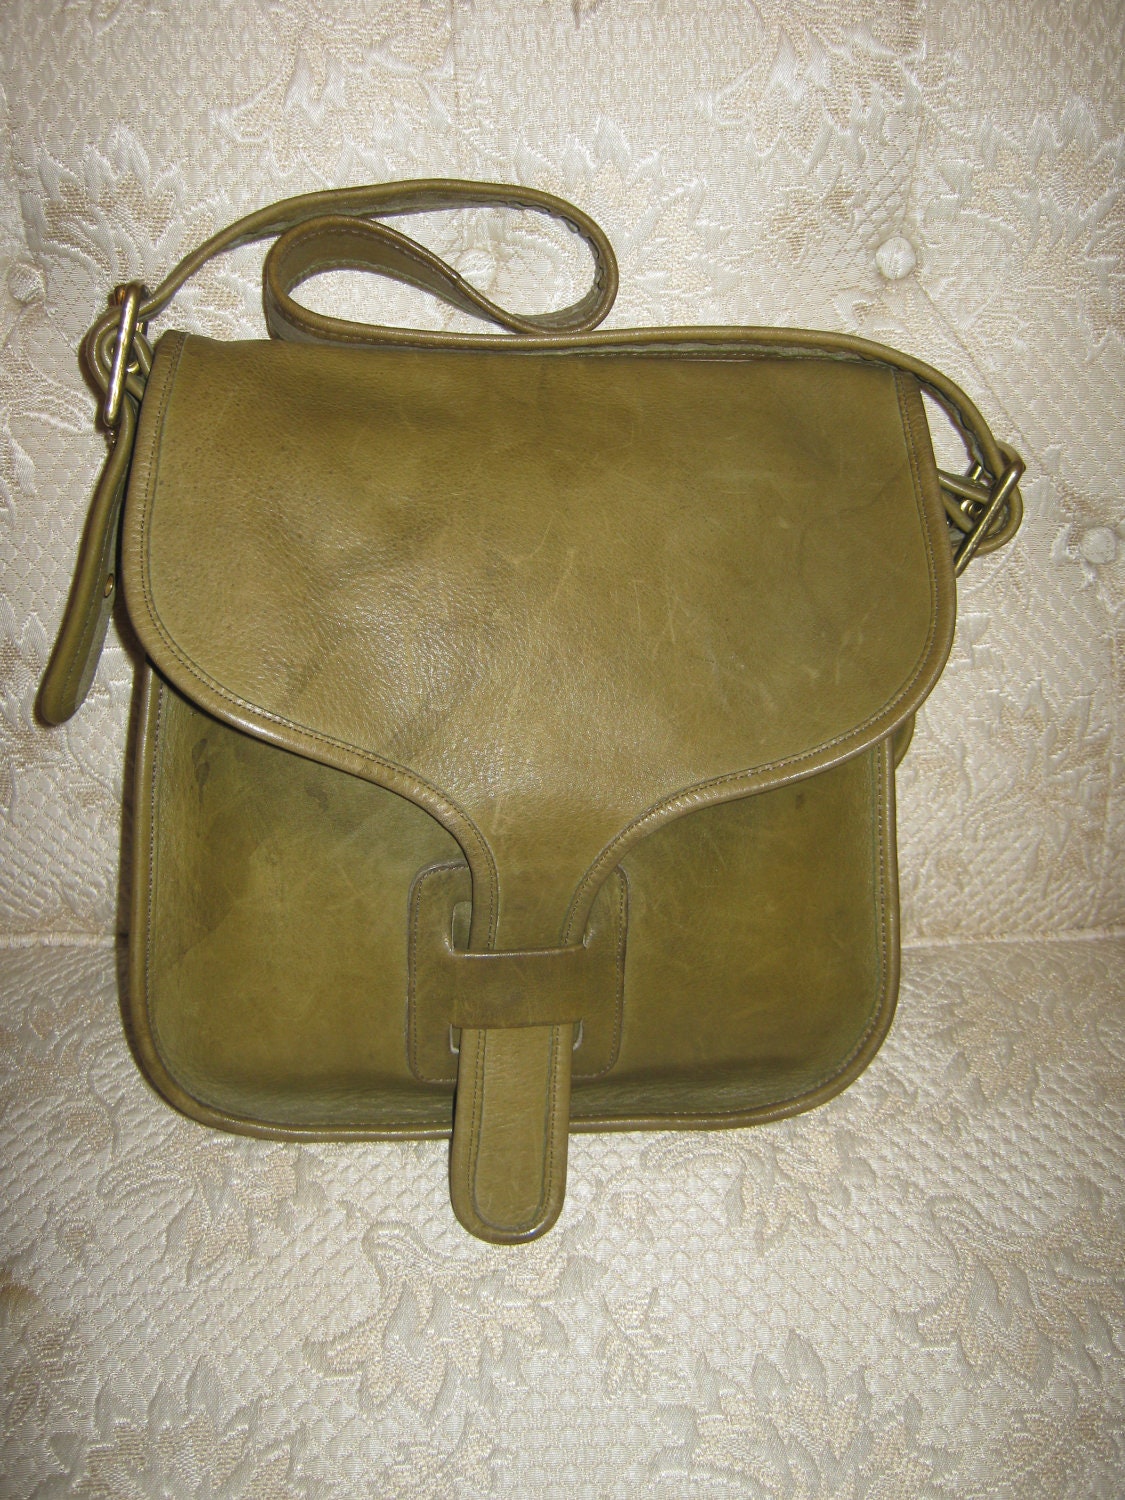 Vintage Coach Courier Saddle Bag Bonnie Cashin by Ms2SweetVintage